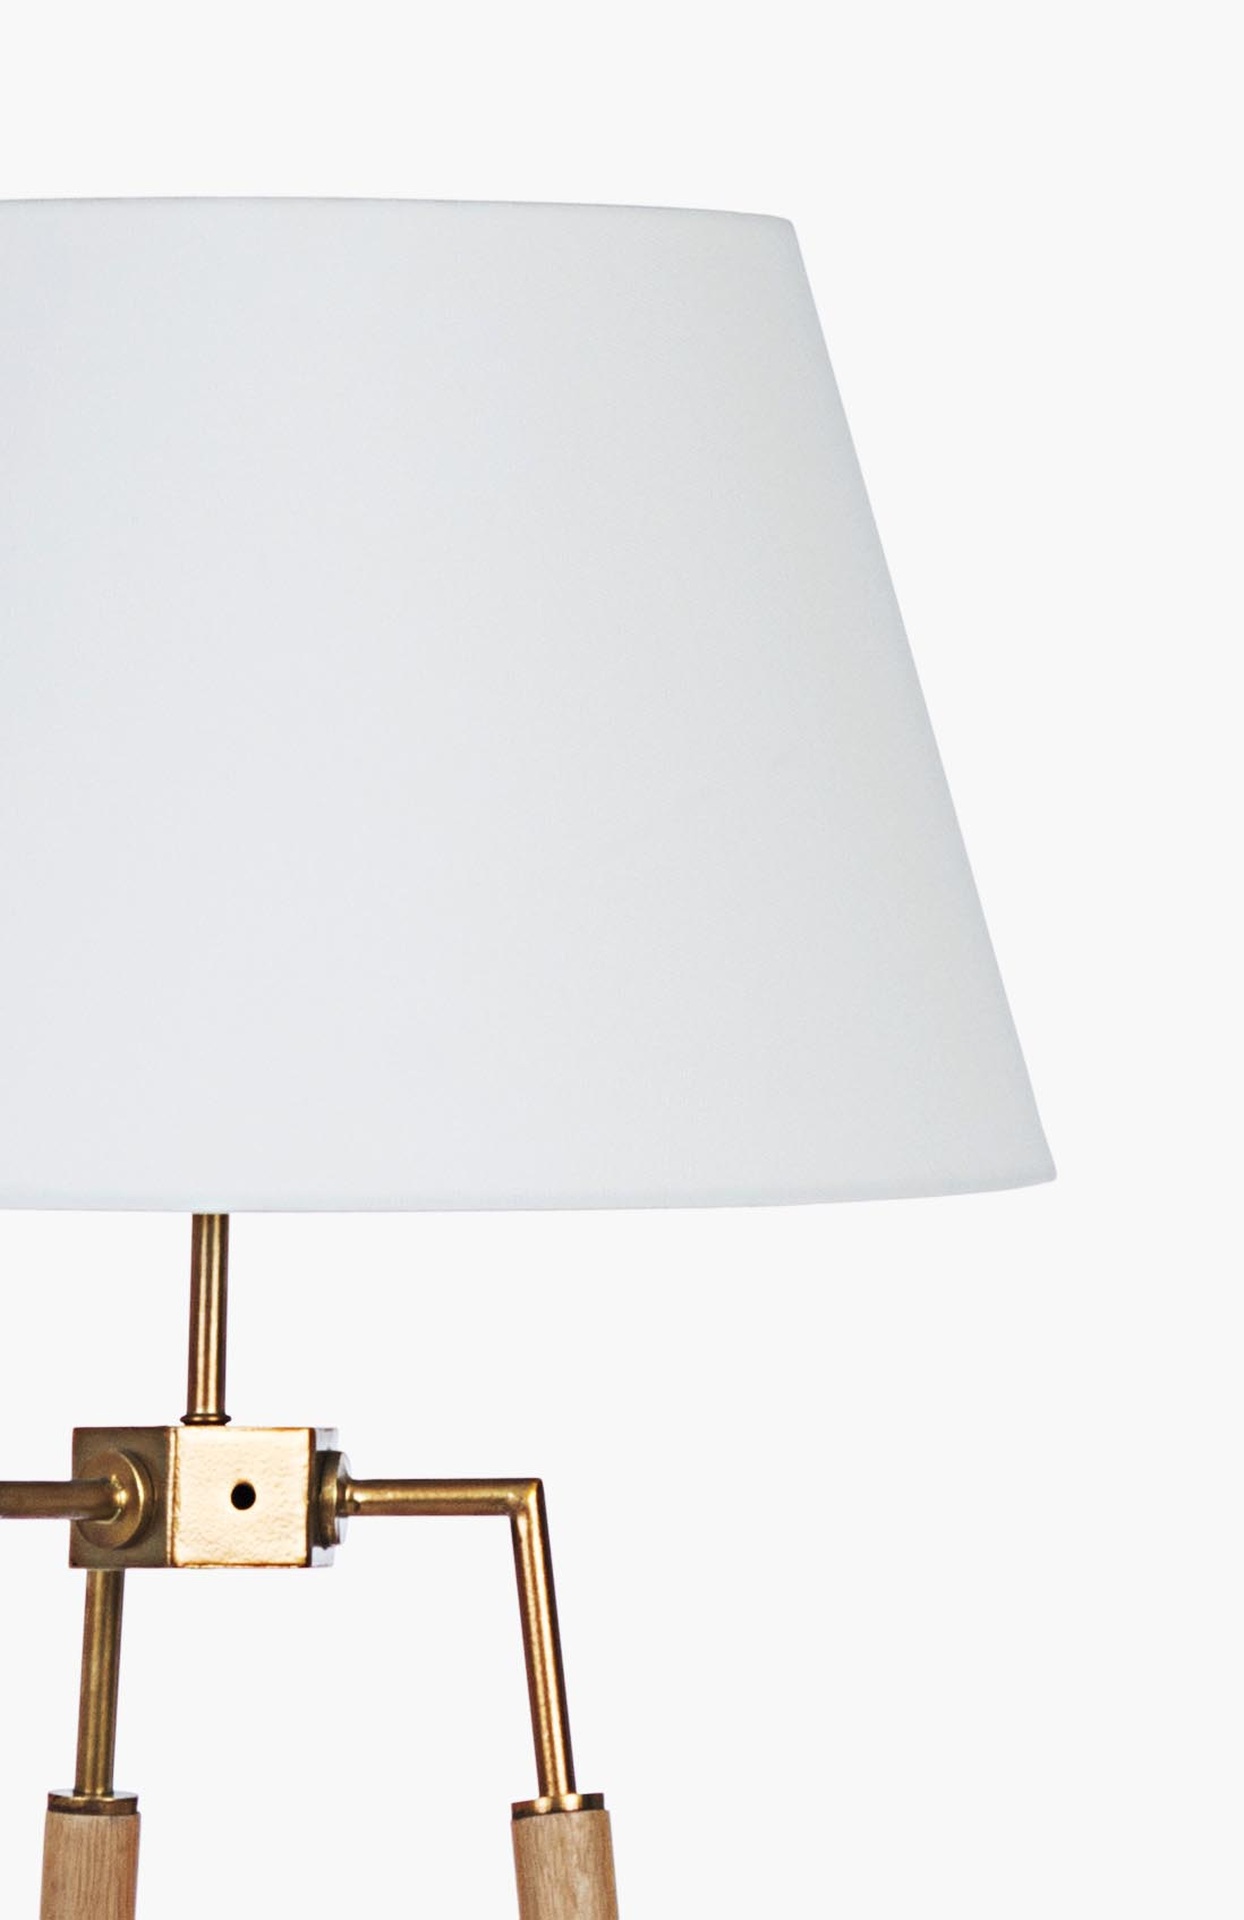 Die Stehleuchte Ellinor überzeugt mit ihrem klassischen Design. Gefertigt wurde sie aus Metall, welches einen Messing Farbton besitzt. Der Lampenschirm ist aus Baumwolle und hat eine weiße Farbe. Die Lampe besitzt eine Höhe von 166 cm.